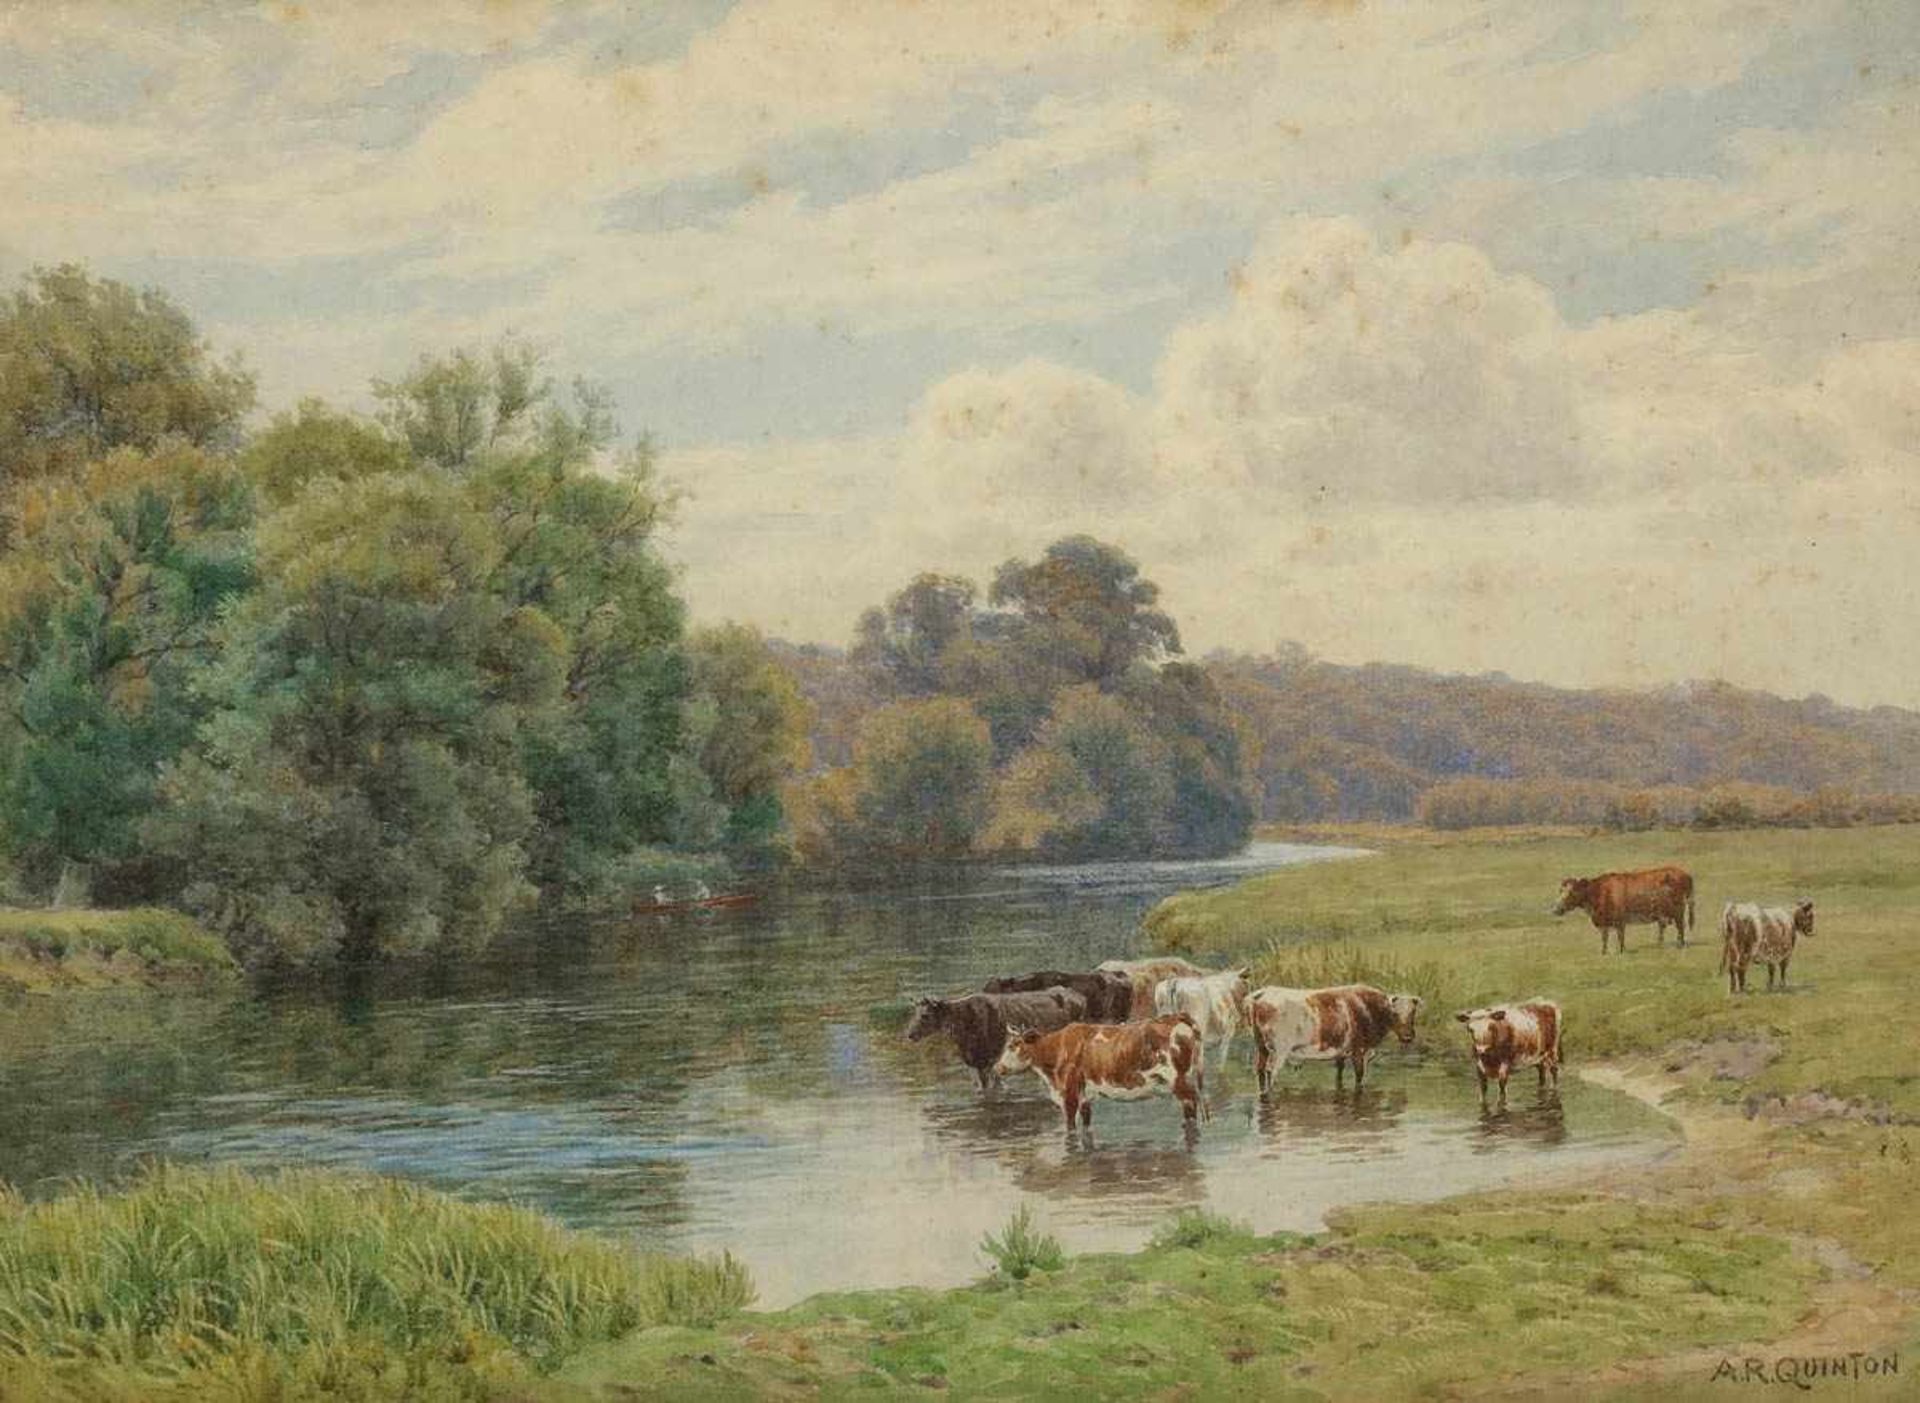 Alfred Robert Quinton 1853 Peckham, London - 1934 - Kühe im Wasser - Aquarell/Papier. 25 x 34,5